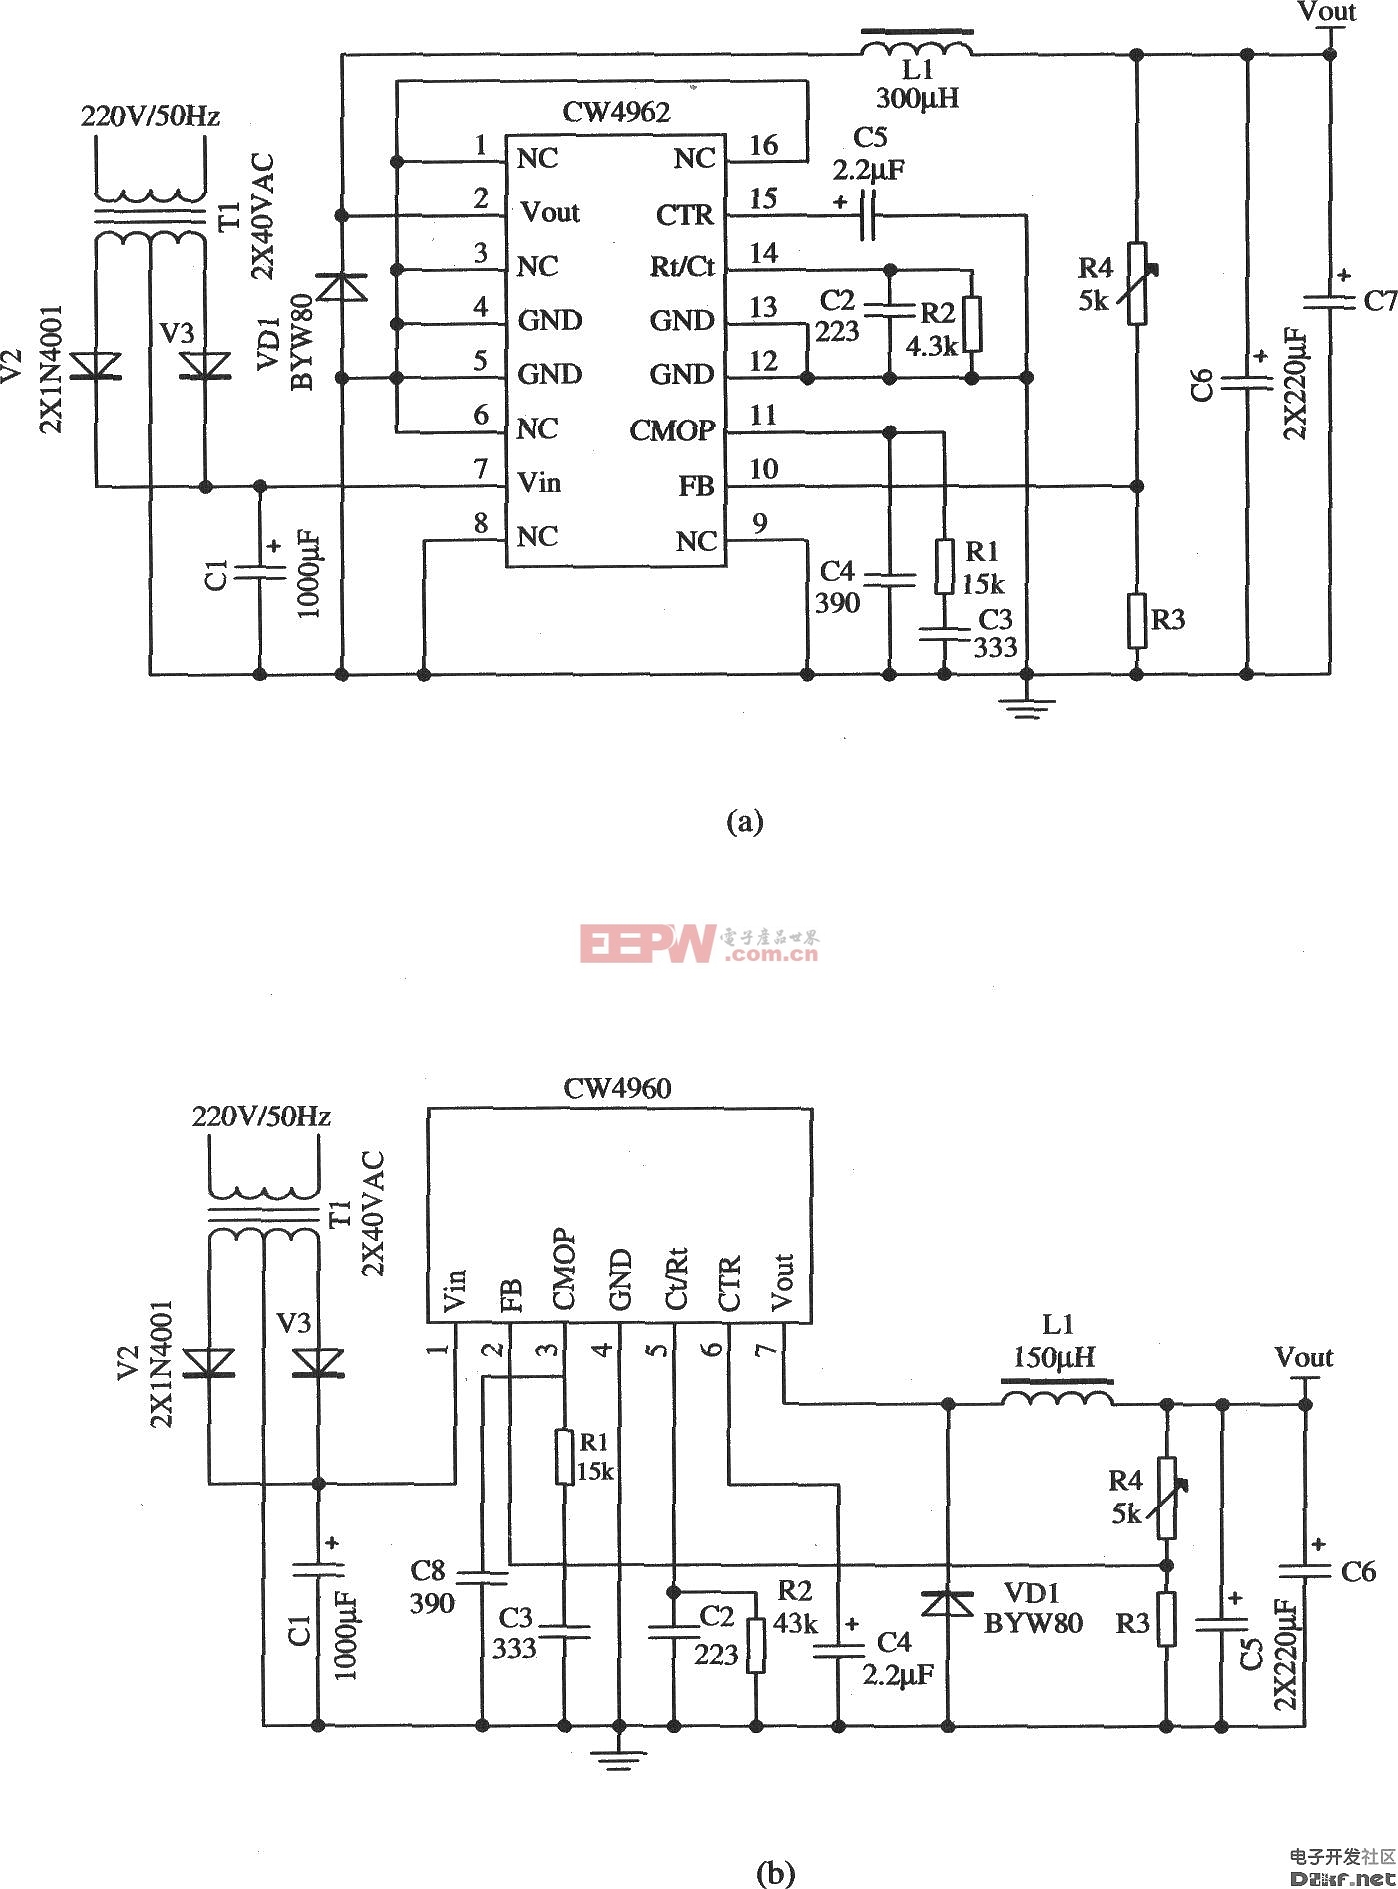 工频变压器对交流220V电网电压降压、整流、滤波后作为前级输入电